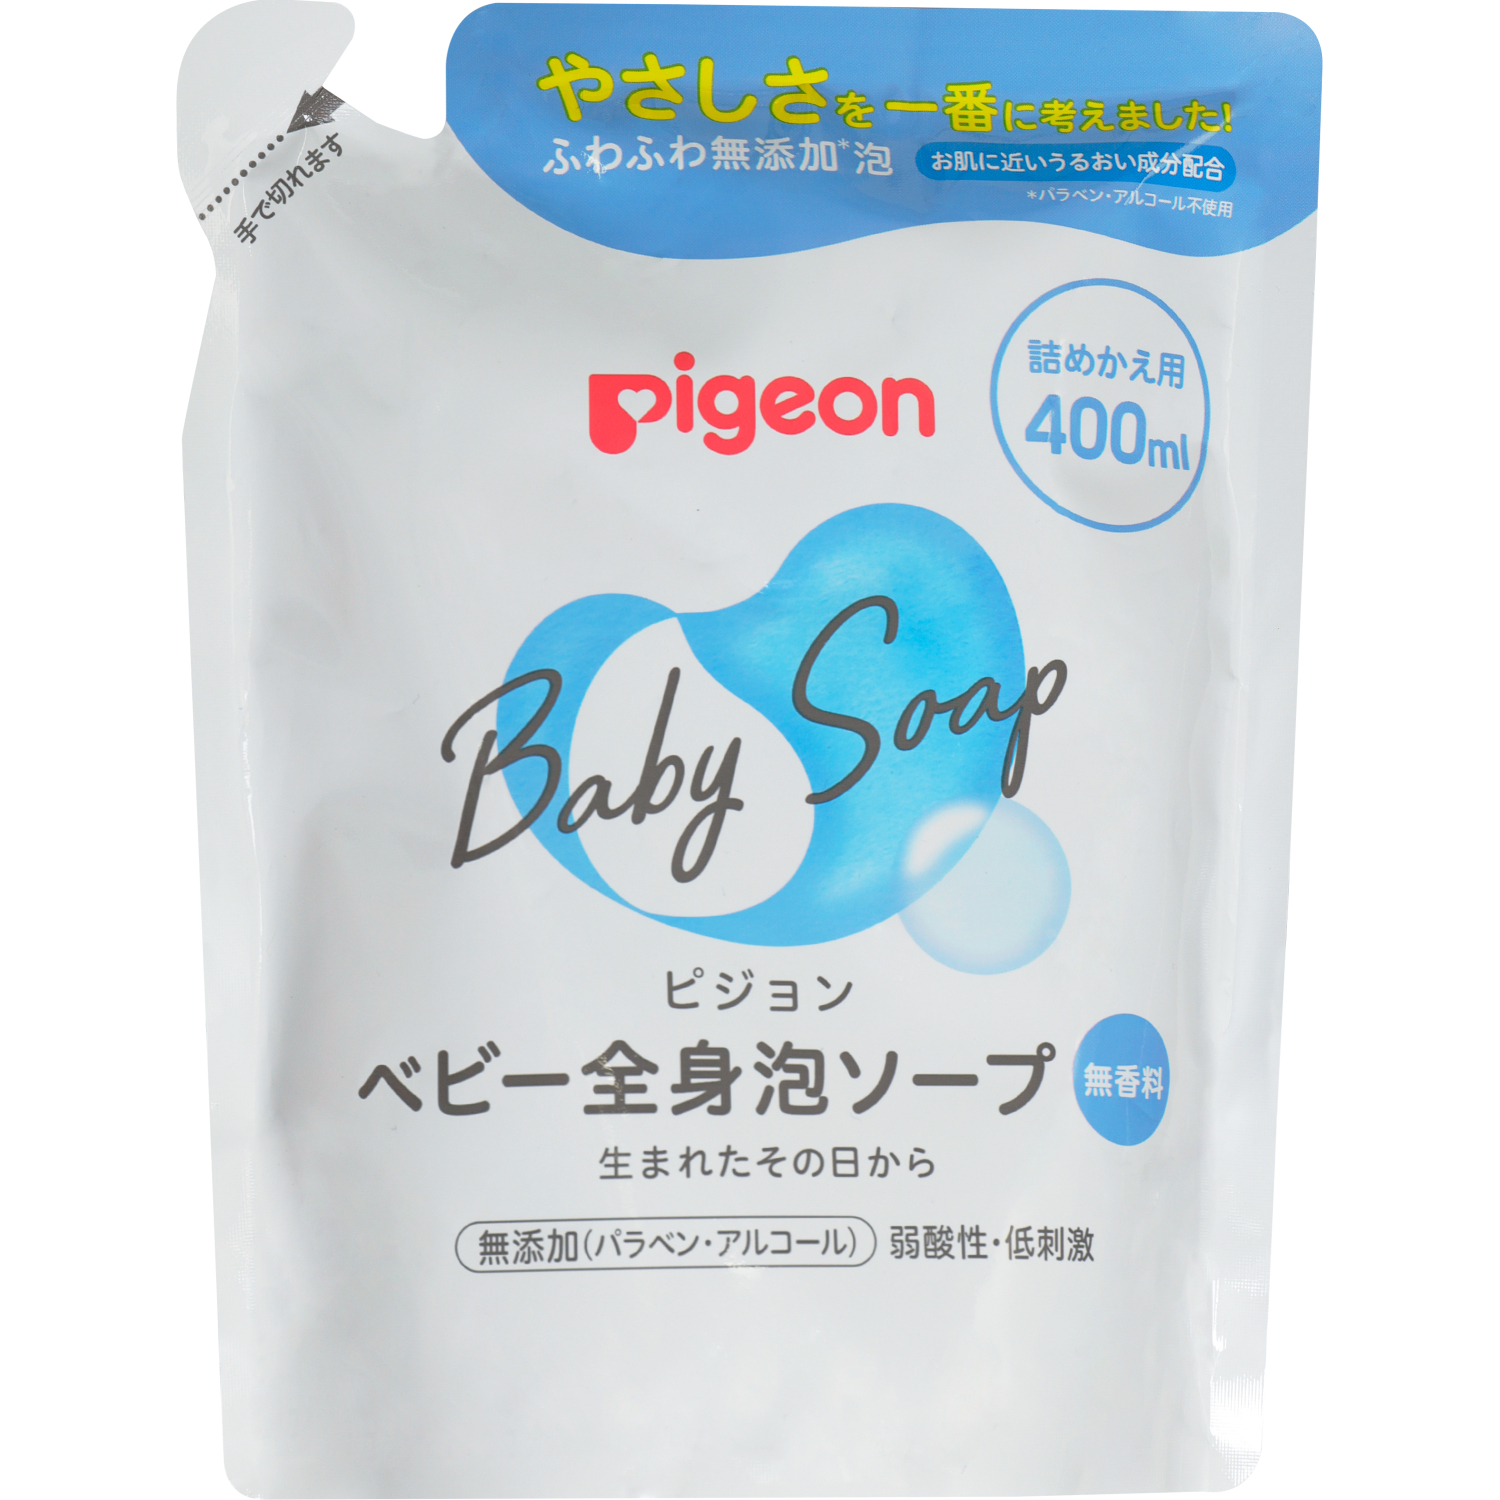 Мыло-пенка Pigeon для младенцев сменный блок 400 мл